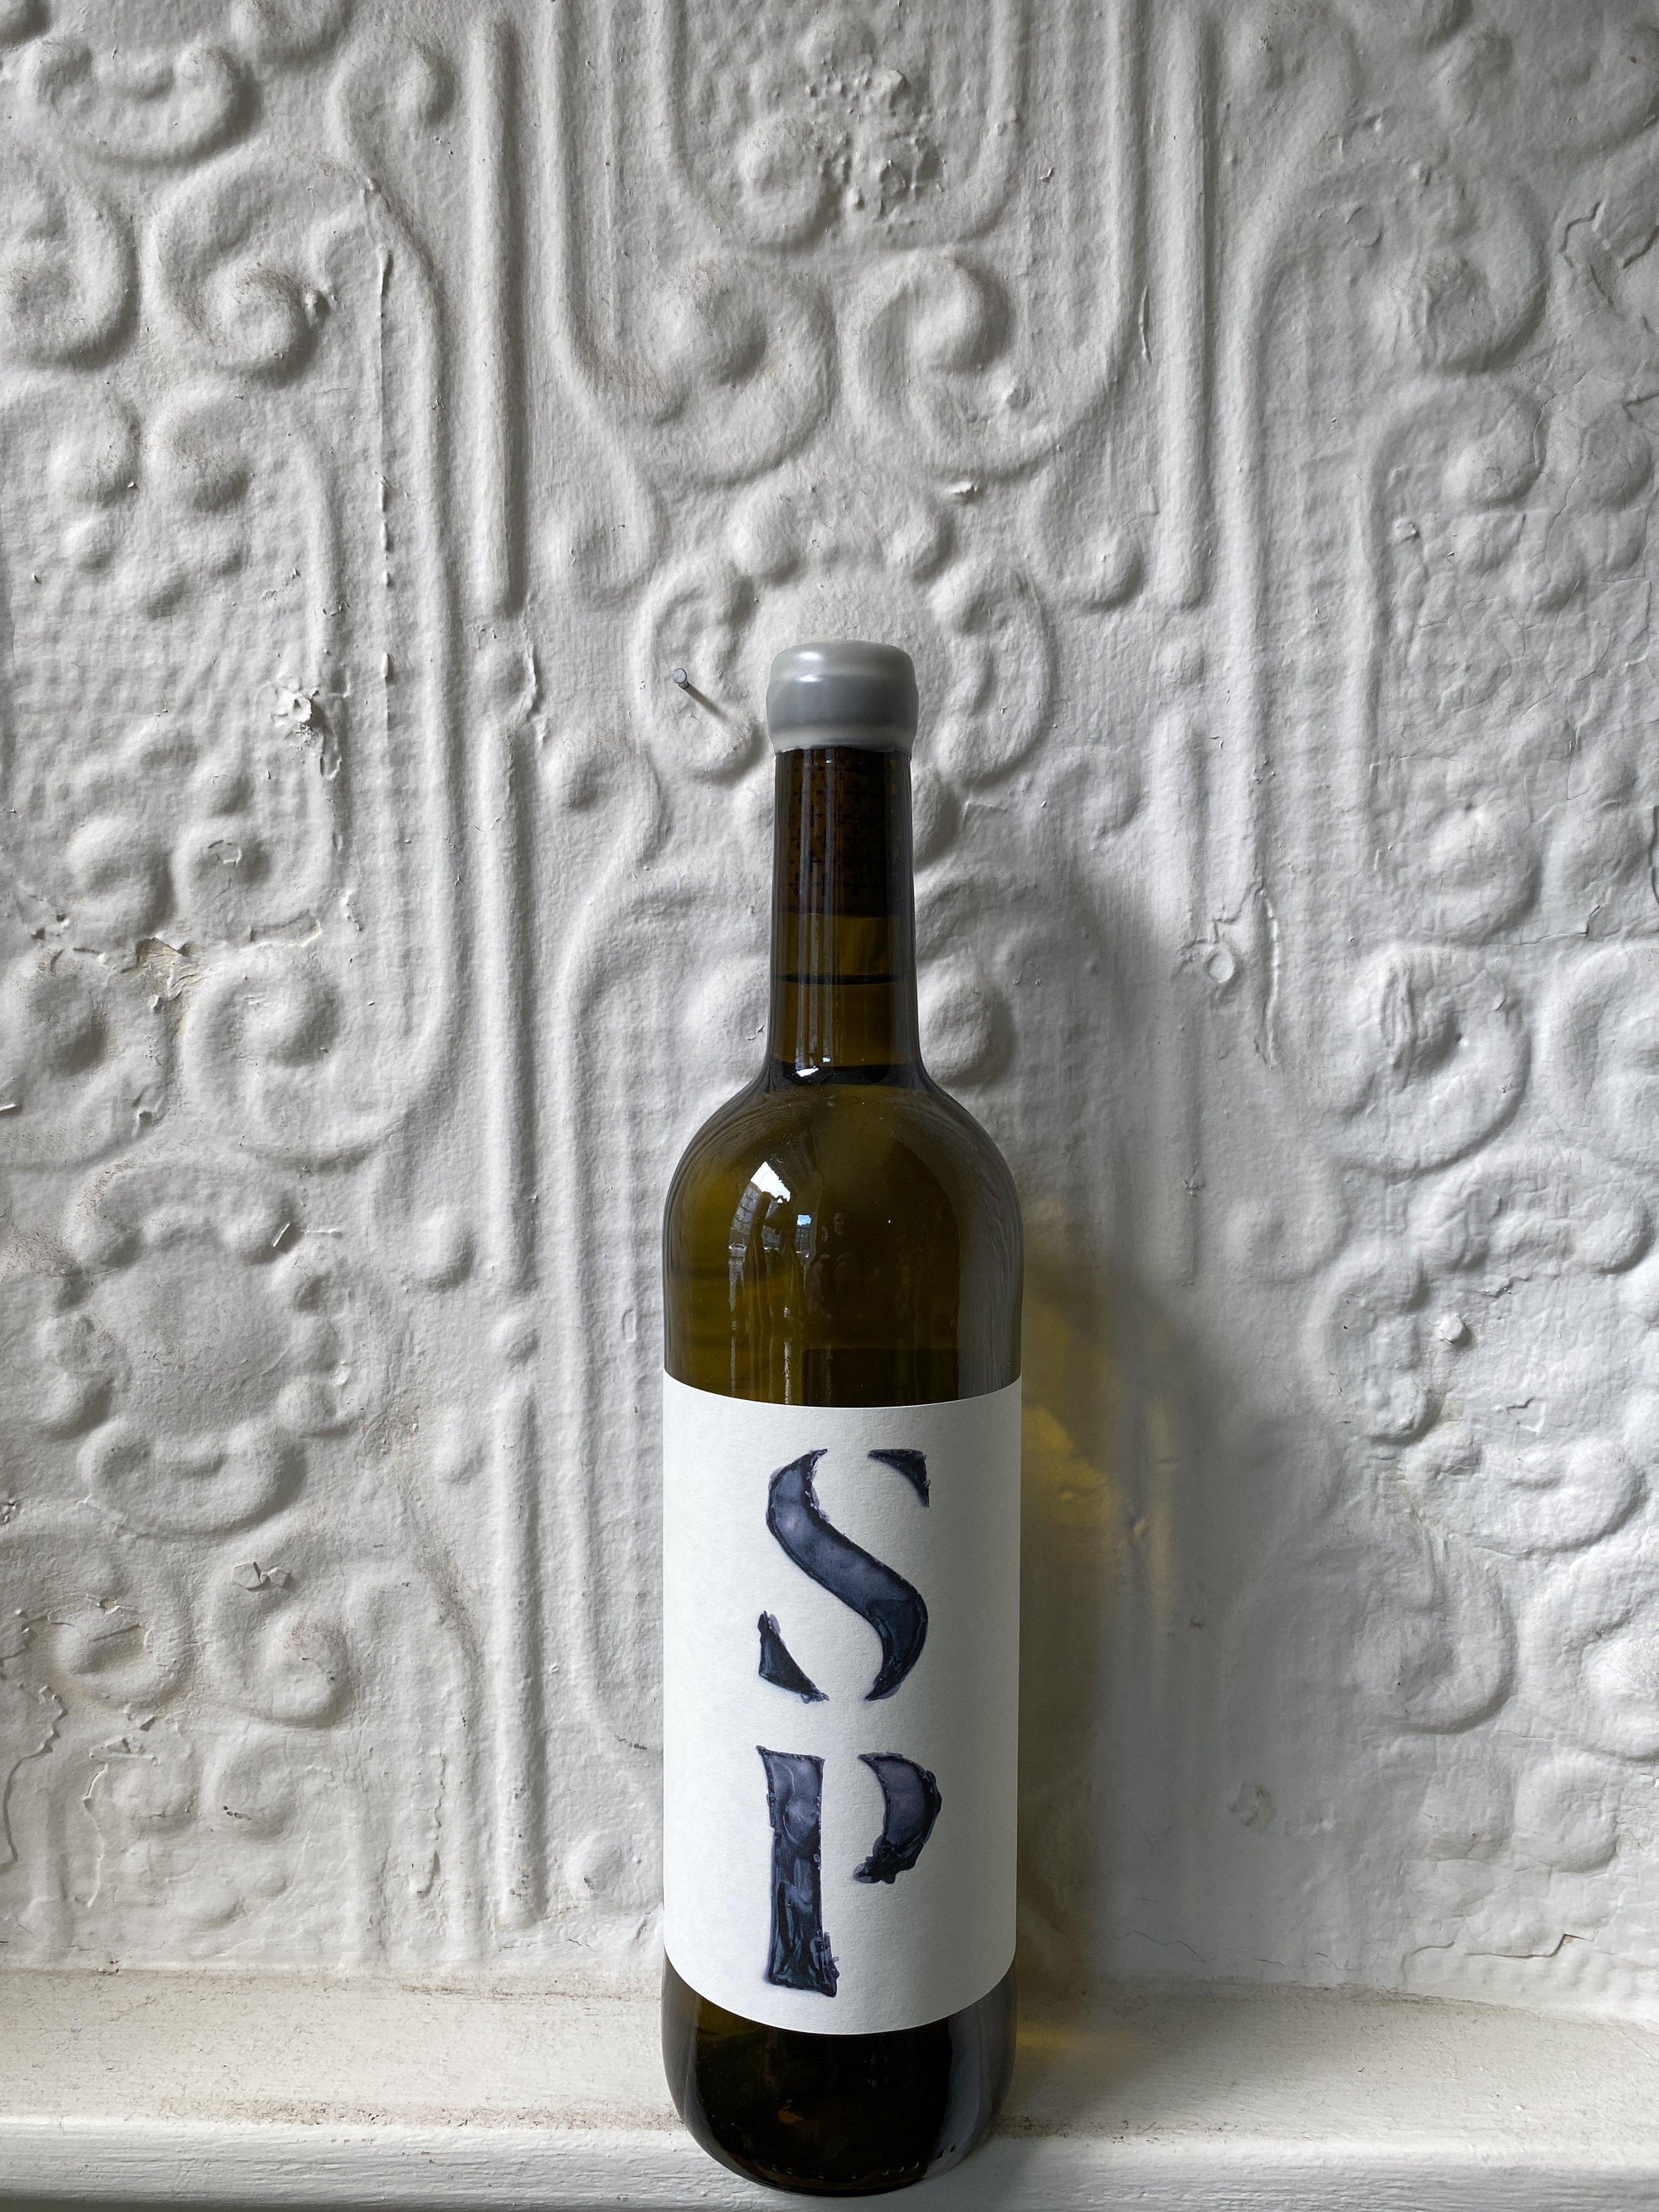 Malvasia Sitges "SP", Partida Creus 2018 (Catalonia, Spain)-Wine-Bibber & Bell